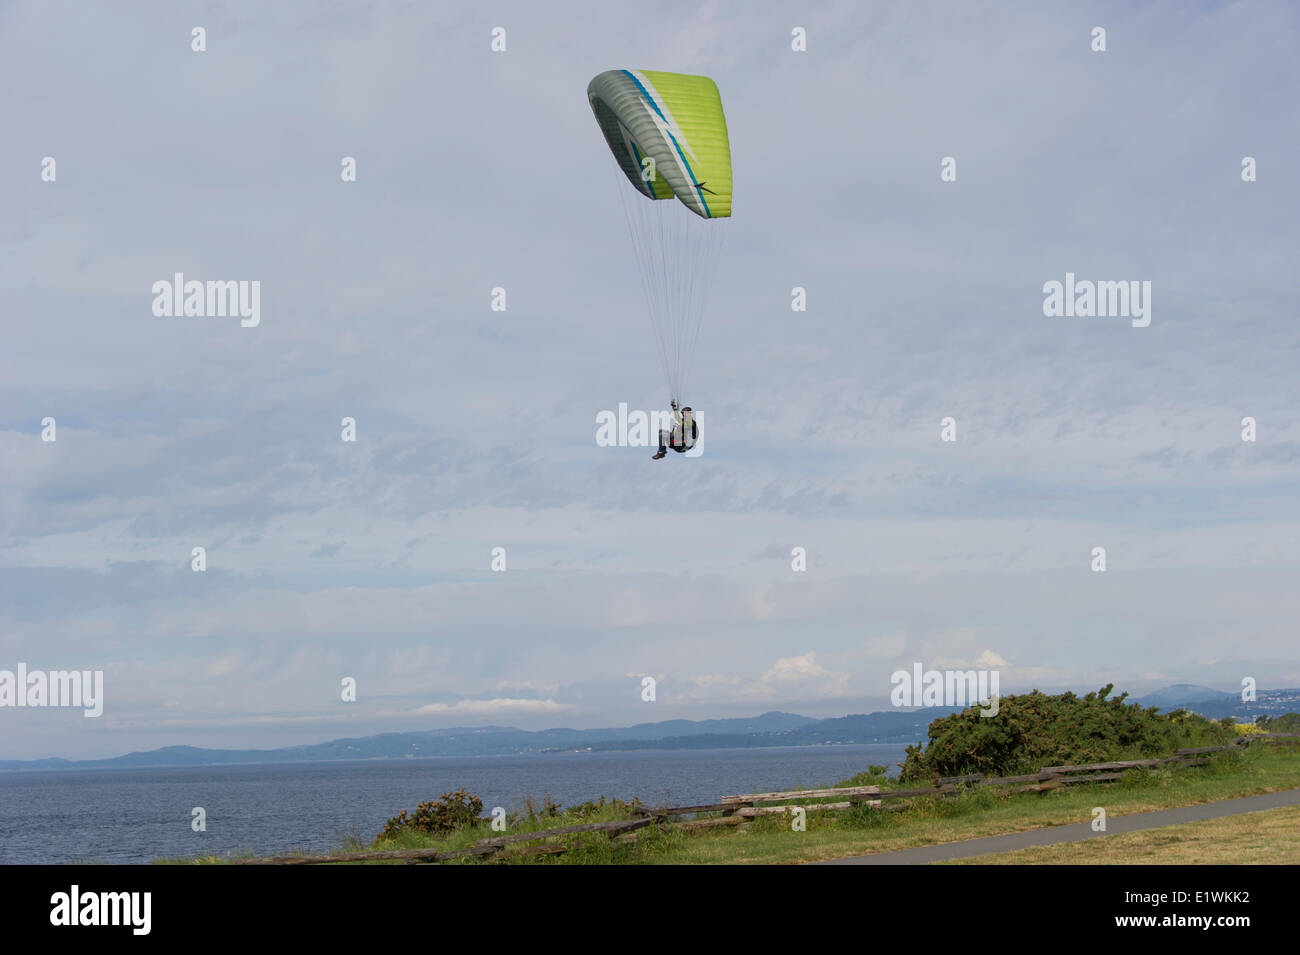 Le parapente est le sport aventure compétitive loisirs parapente vol libre : léger-vol planeur lancé-pied Banque D'Images